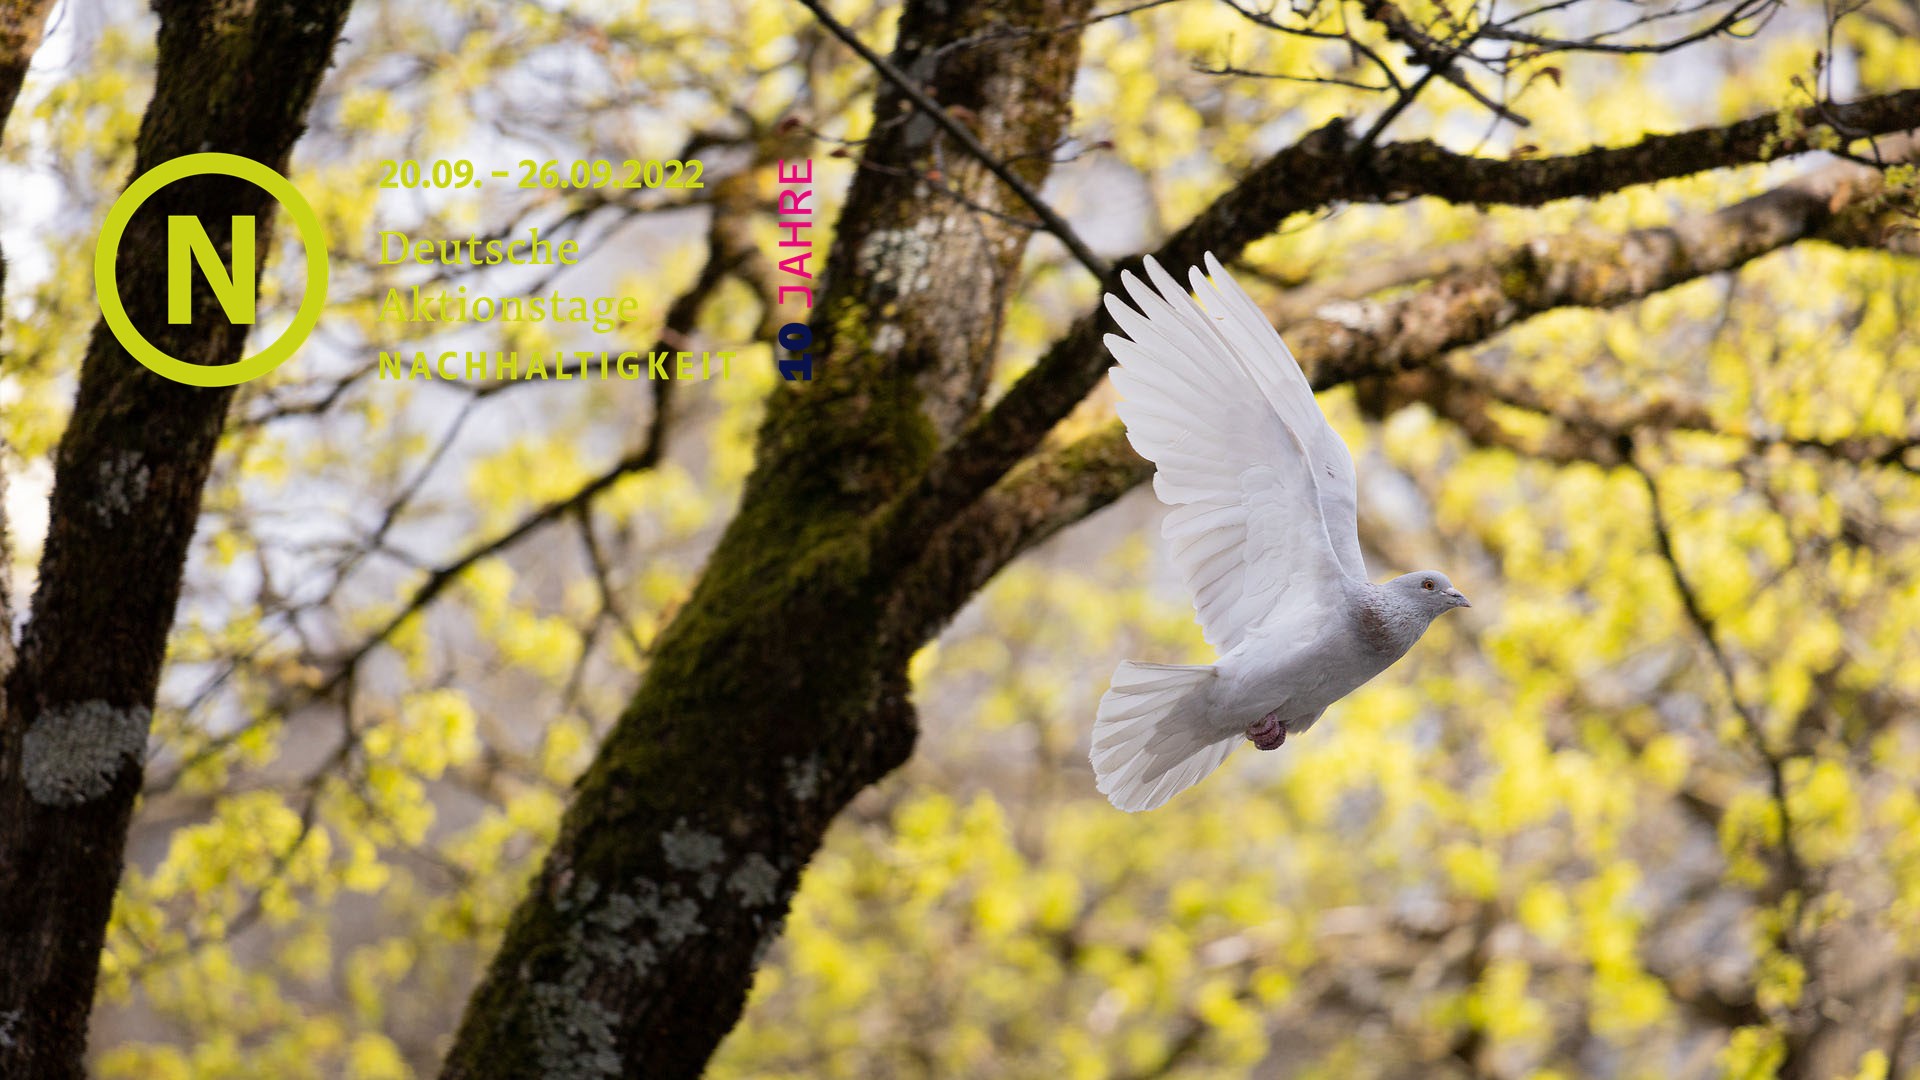 Eine weiße Taube fliegt vor Bäumen mit gelben Blättern.  In der Bildecke oben links steht das Logo der Deutschen Aktionstage für Nachhaltigkeit.